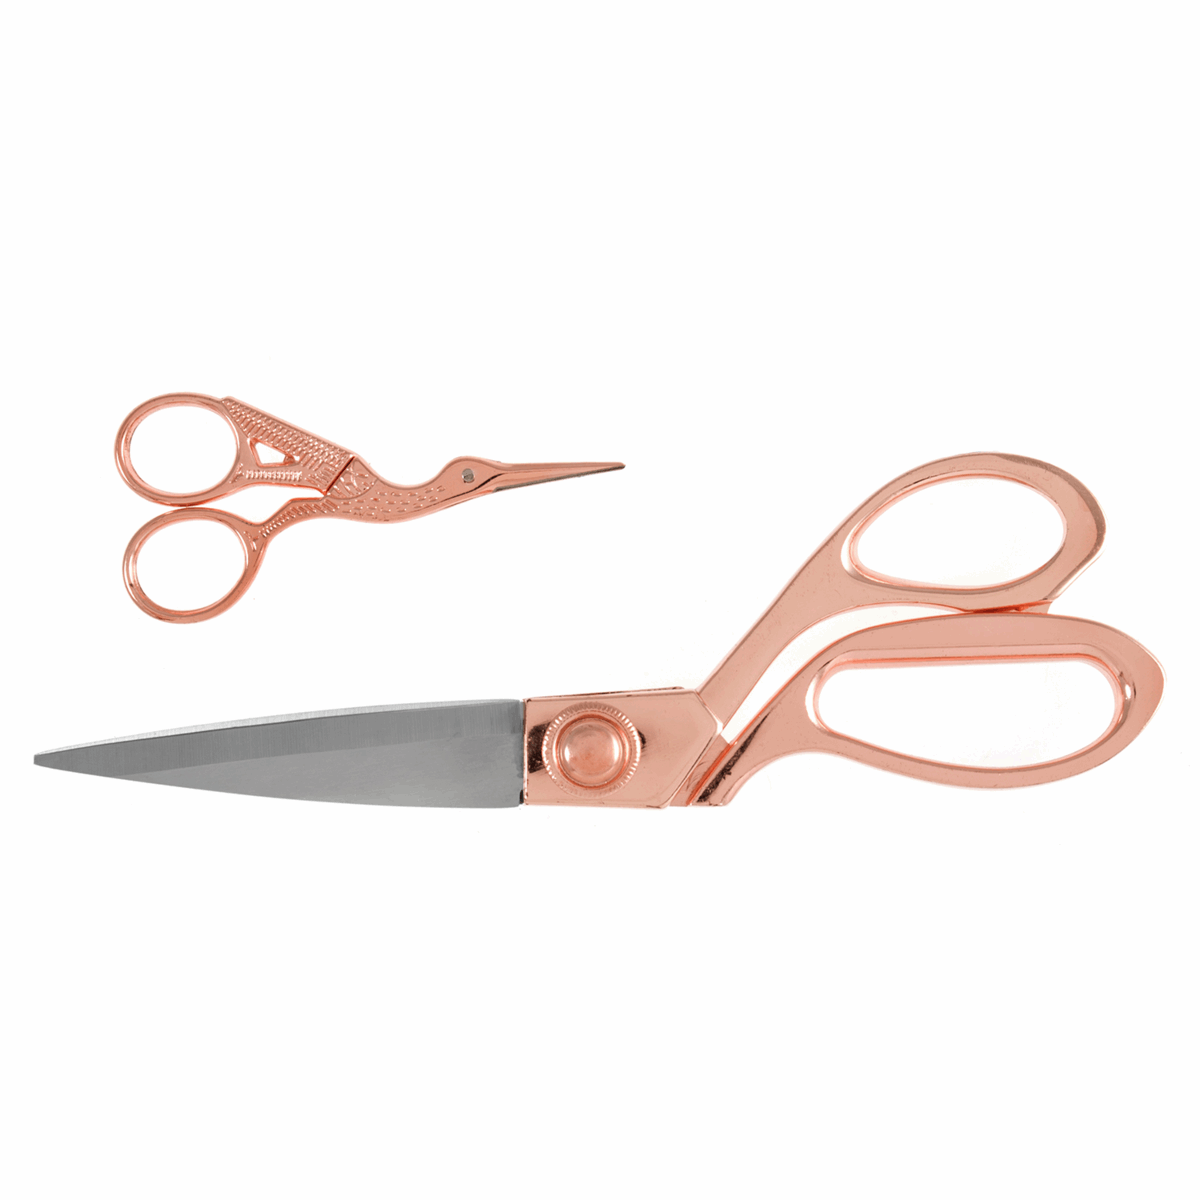 Milward scissors